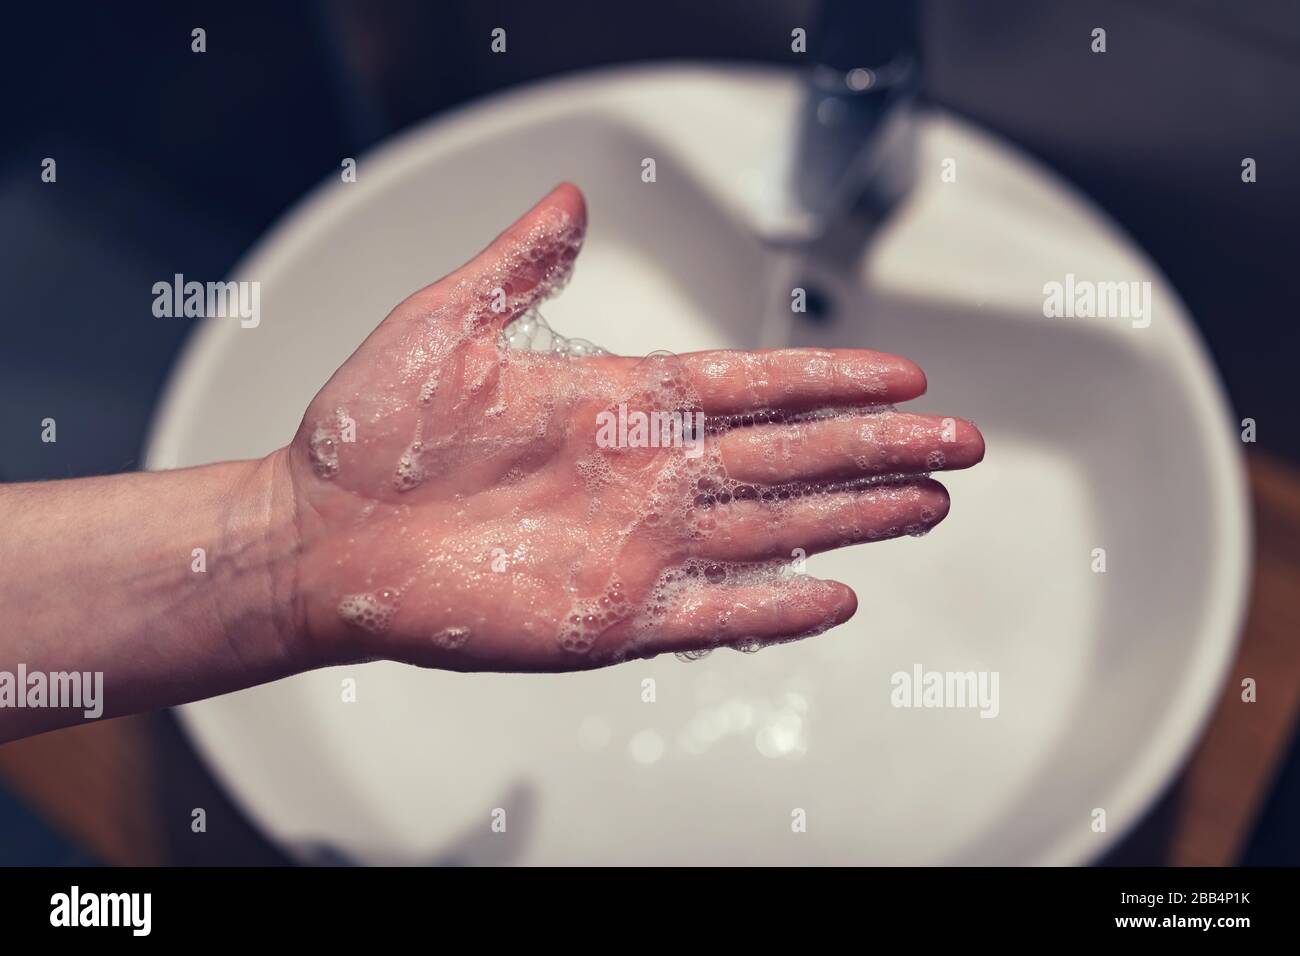 Donna lavando le mani in bagno, la sanità e l'igiene, fuoco selettivo Foto Stock